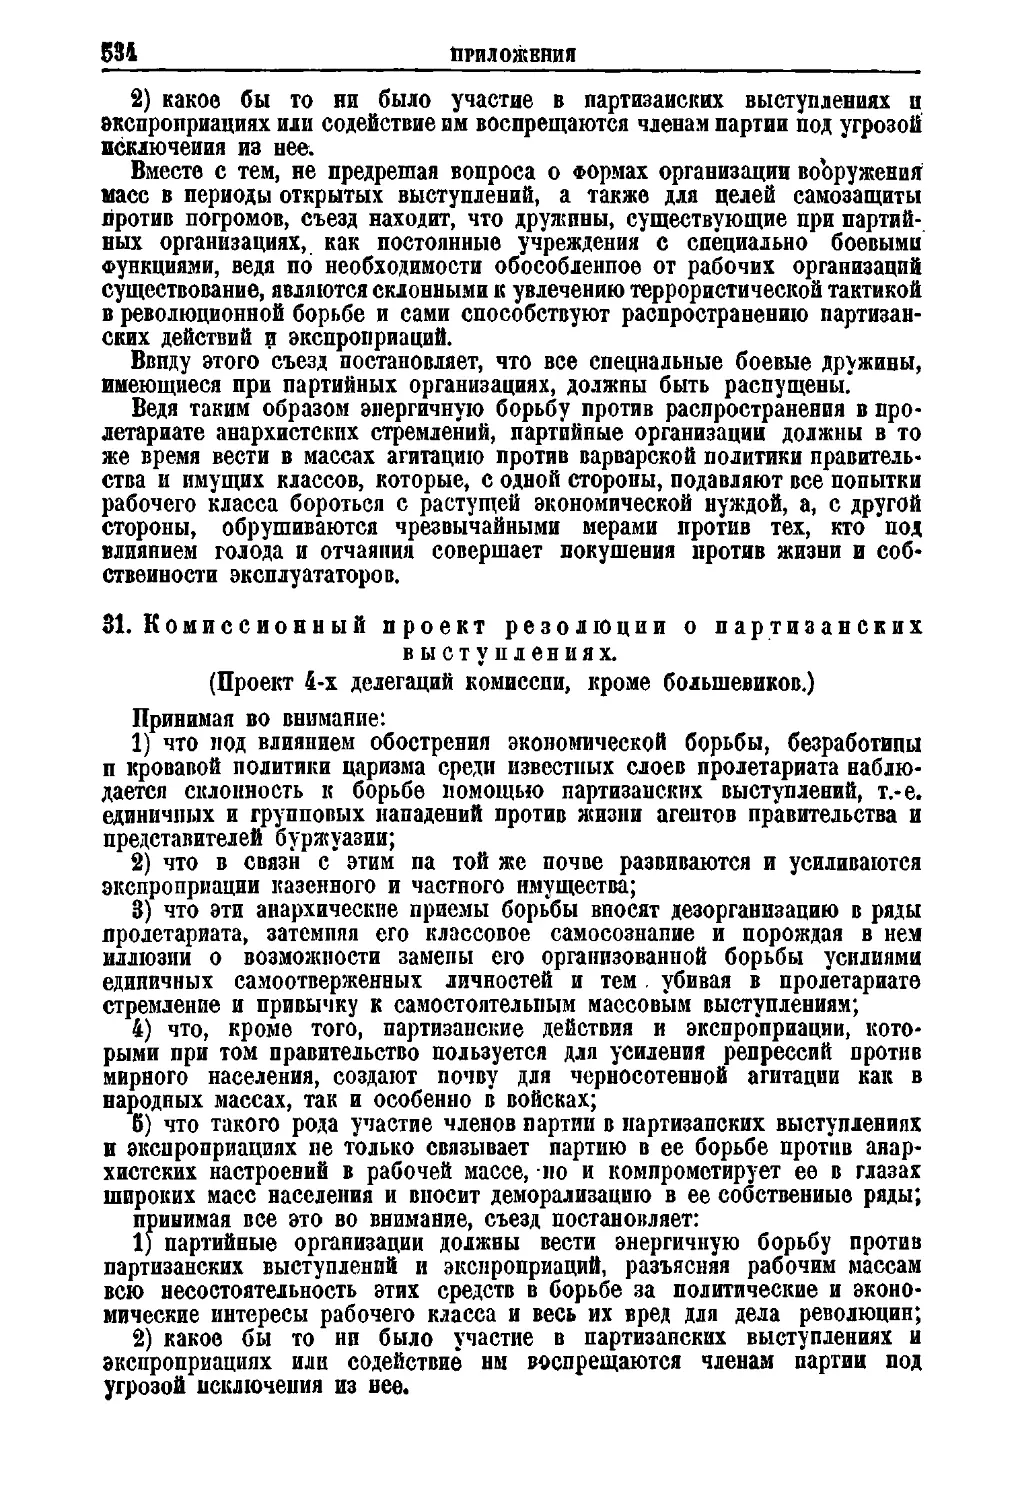 31. Комиссионный проект резолюции о партизанских выступлениях